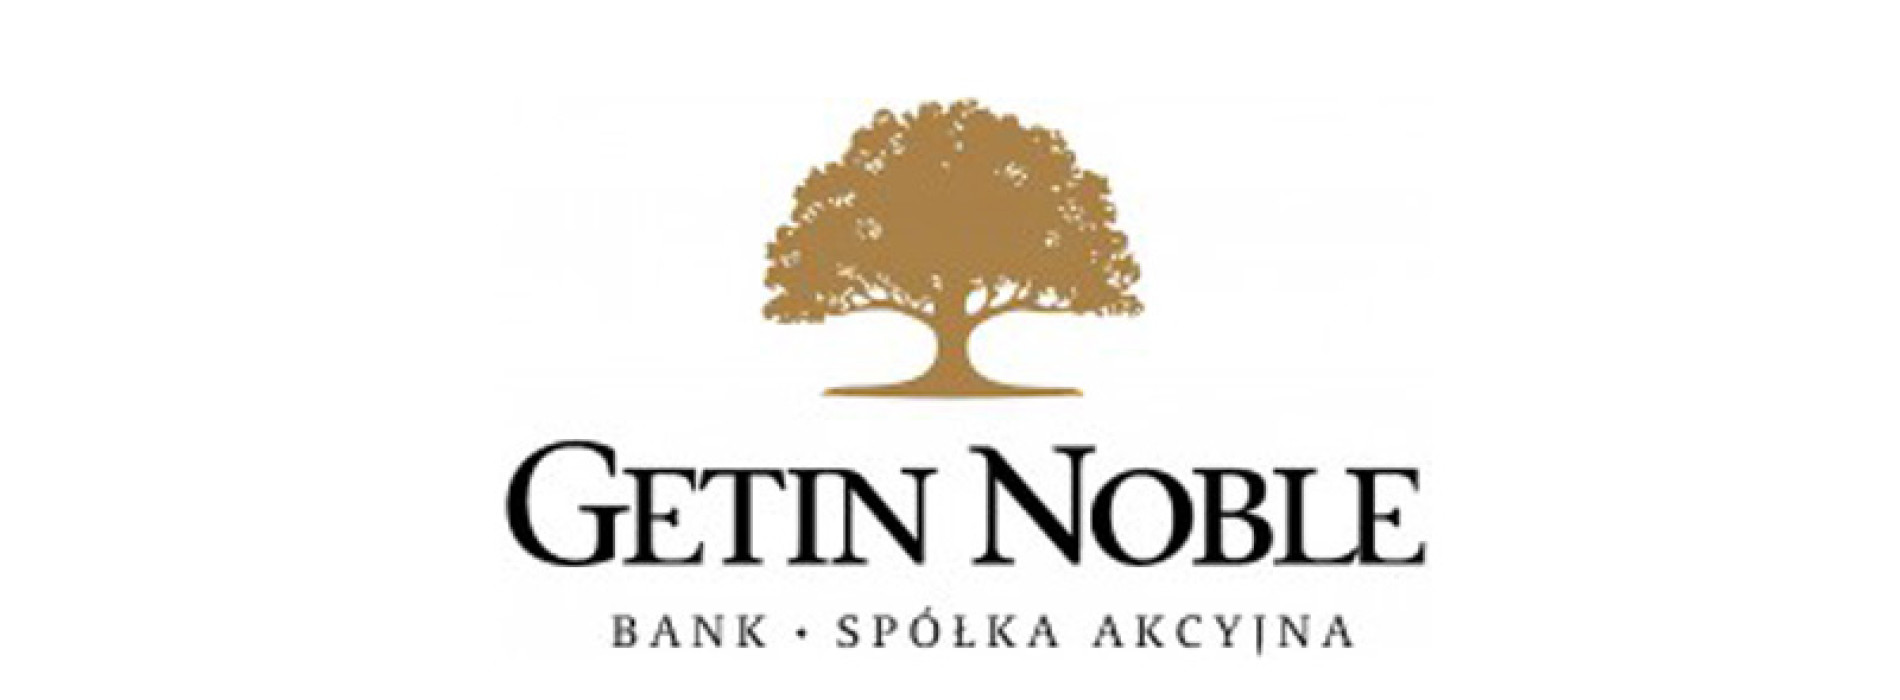 Noble Bank po raz trzeci z rzędu zwycięzcą ratingu private banking Forbes